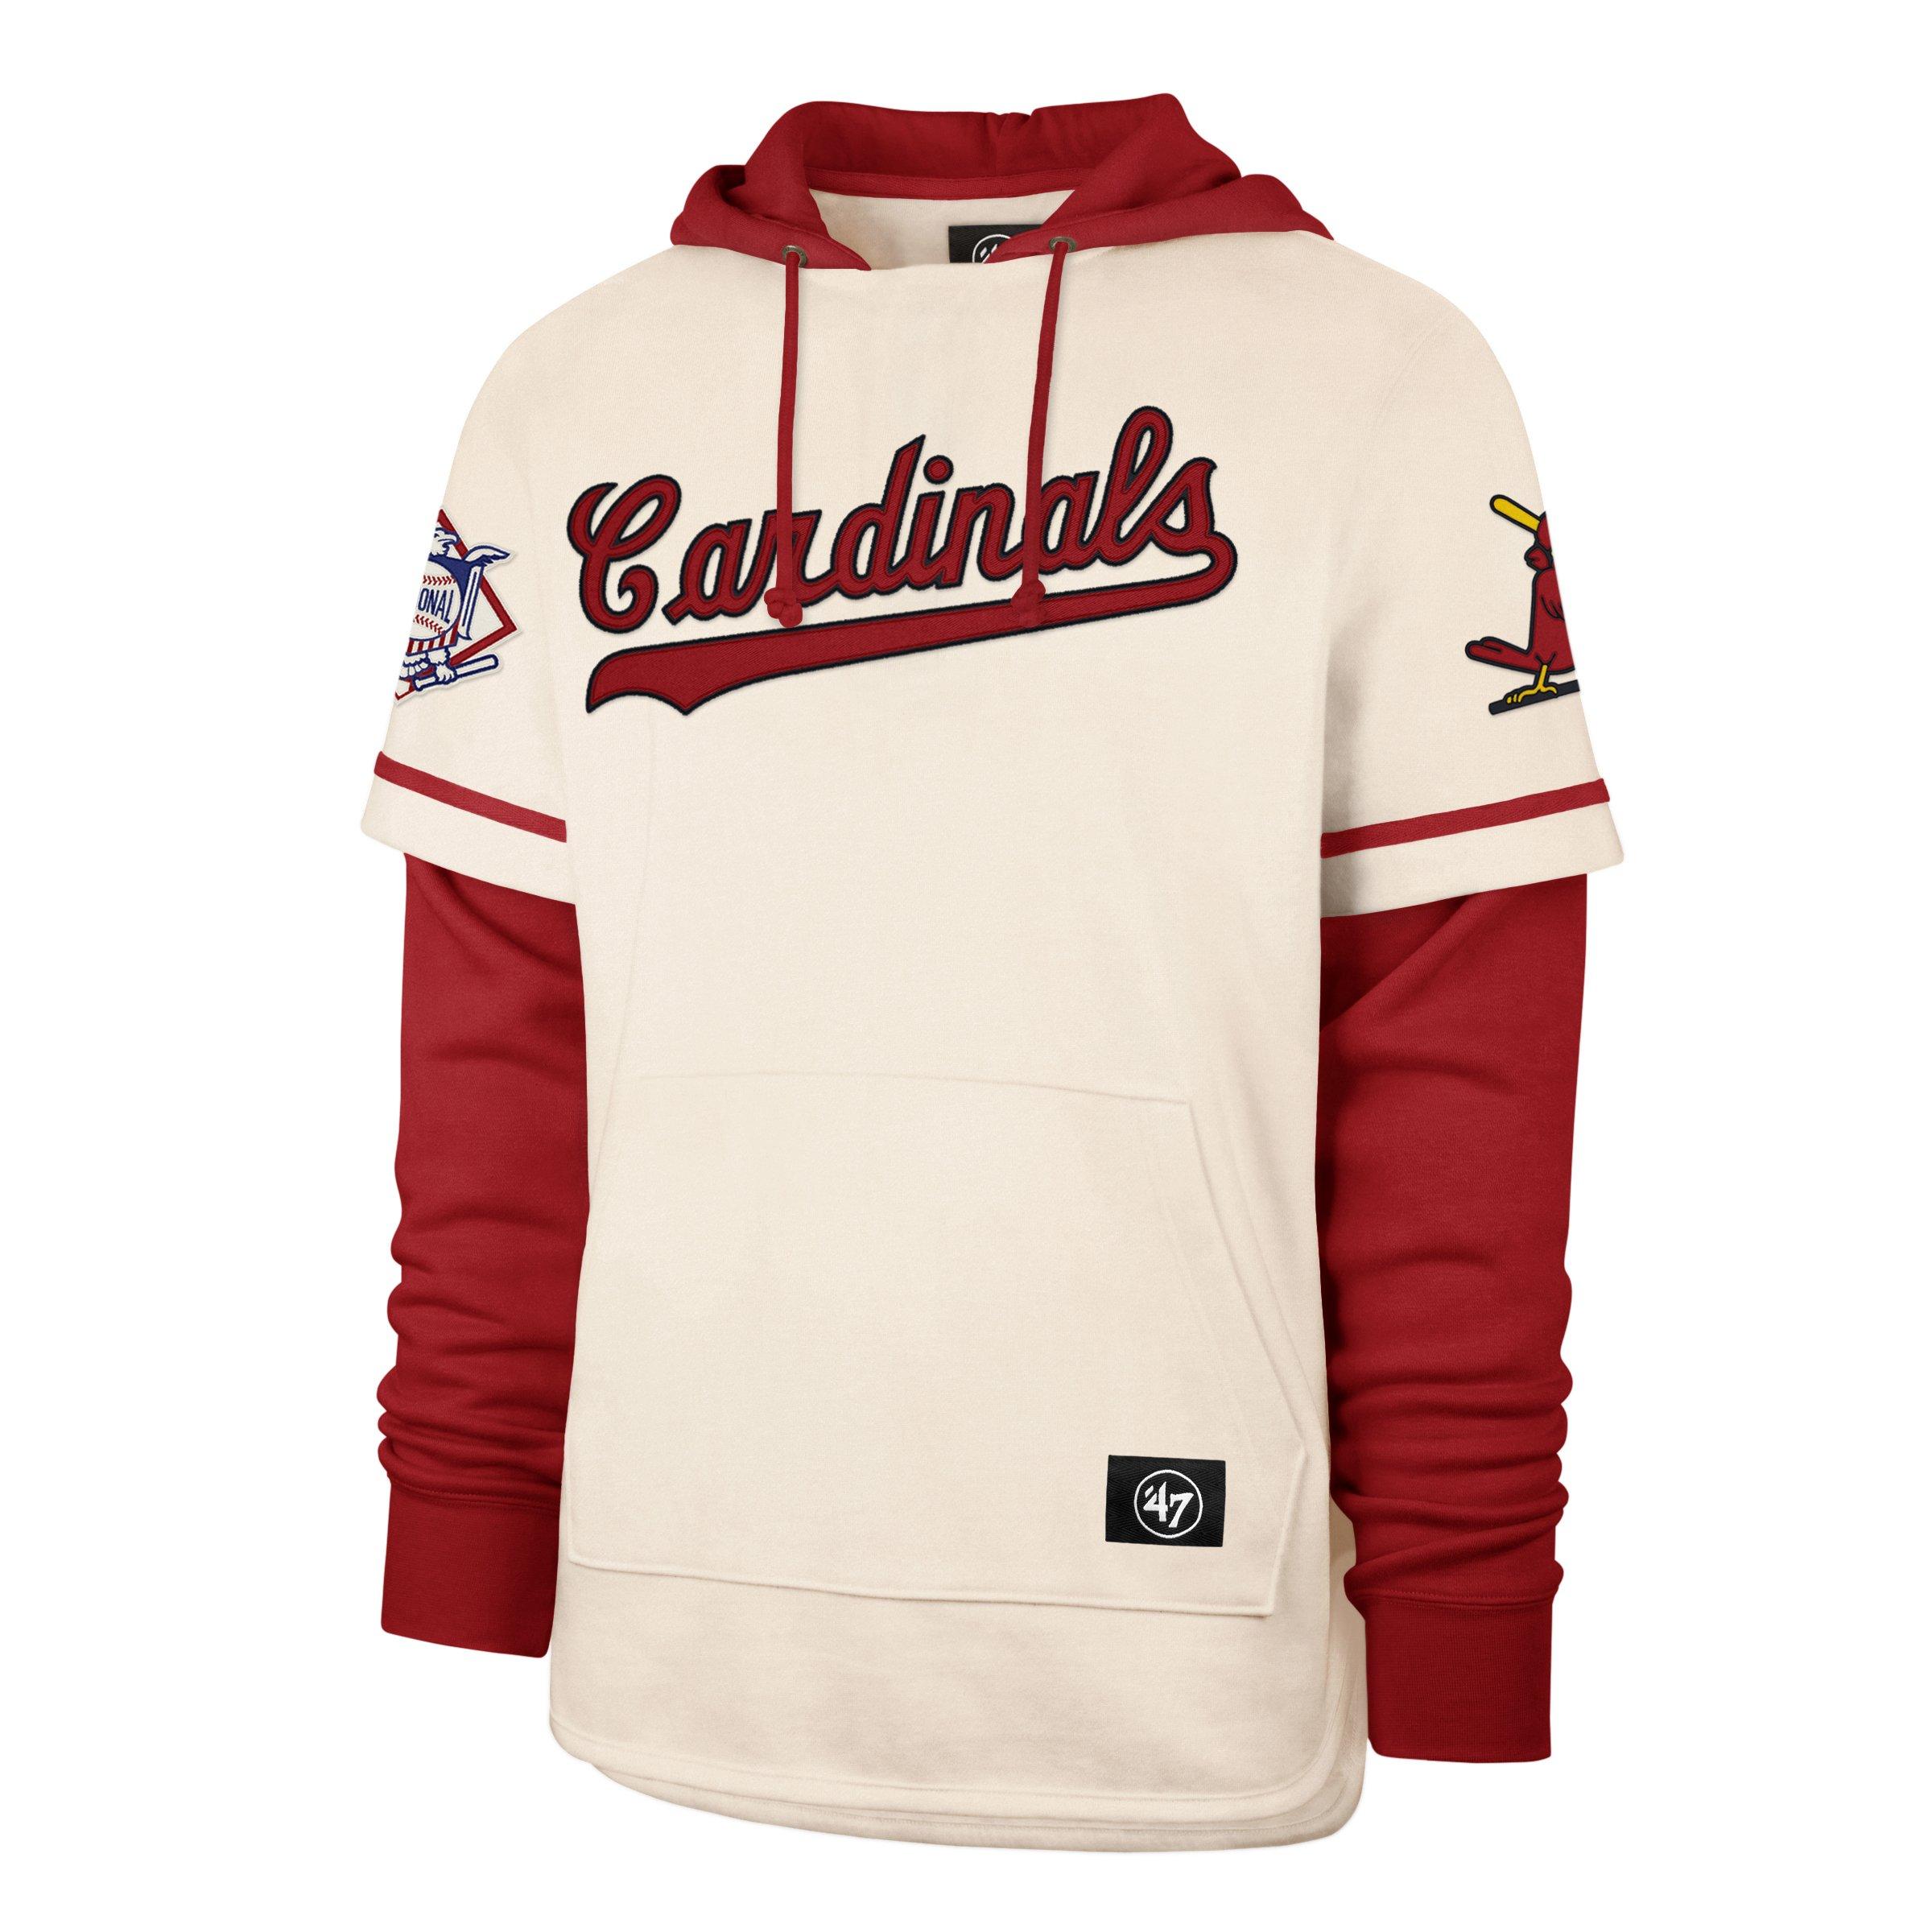 MLB St. Louis Cardinals Men's Lightweight Bi-Blend Hooded Sweatshirt - S